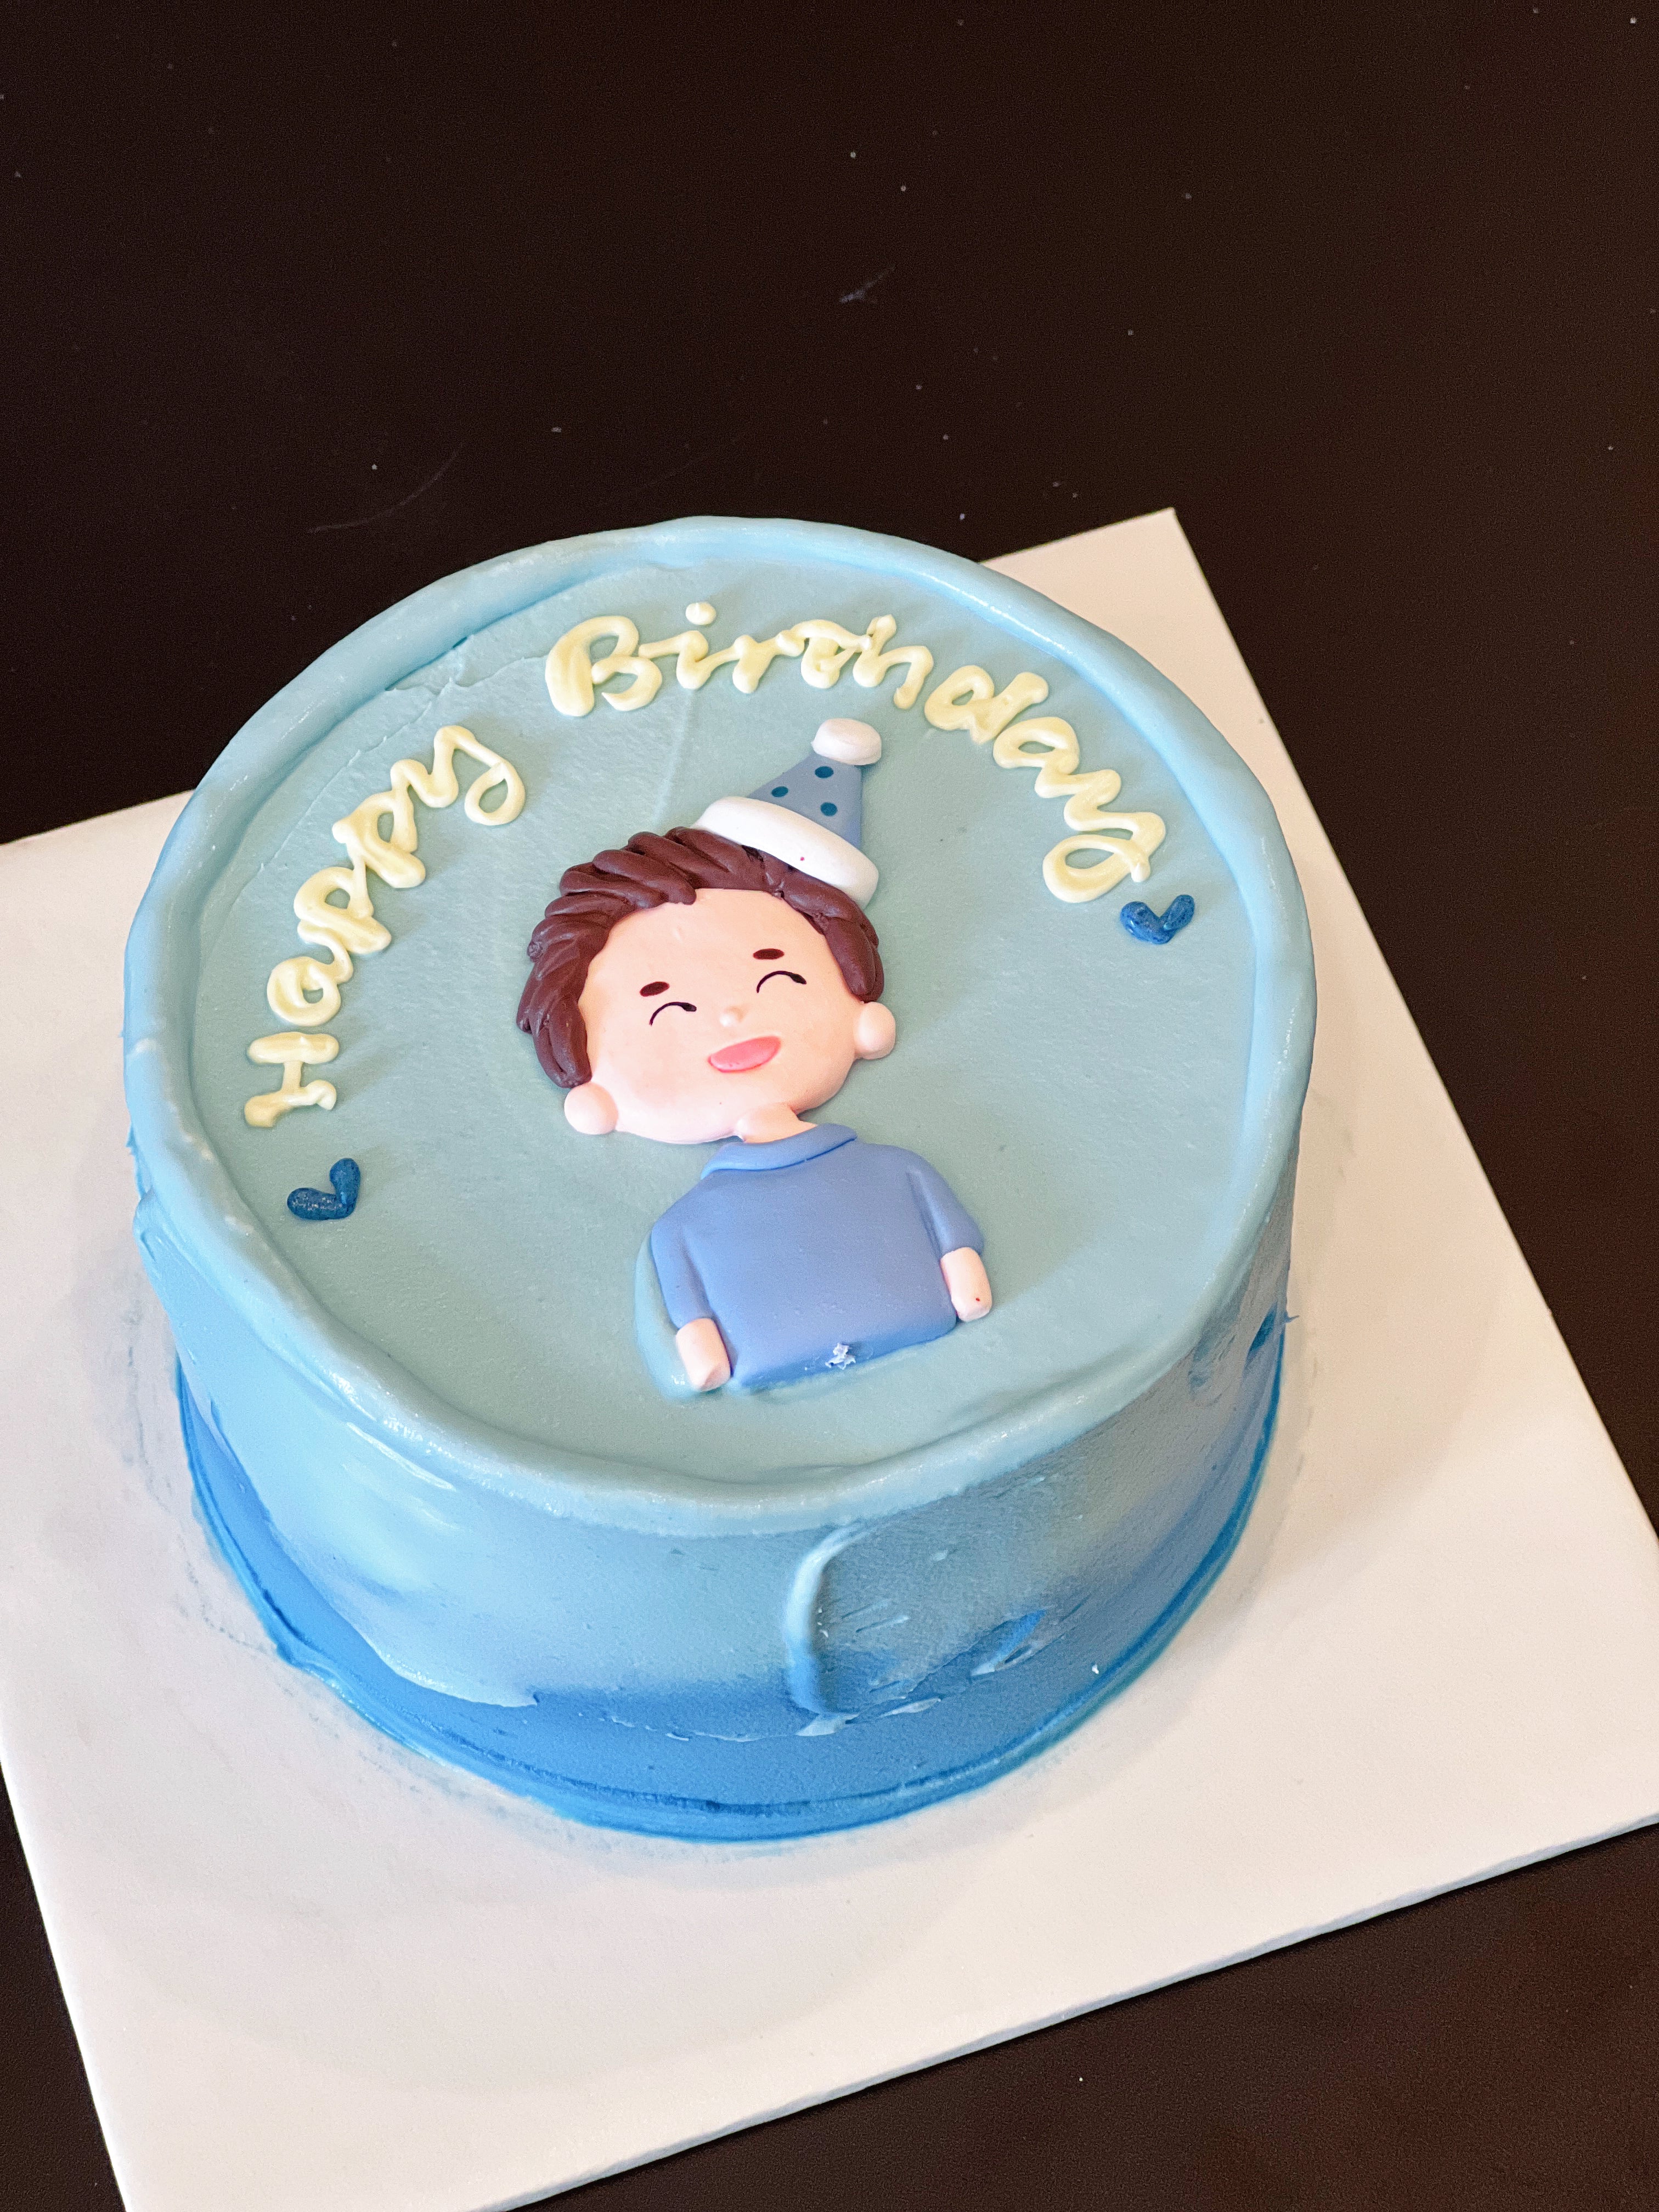 Birthday Boy Cake